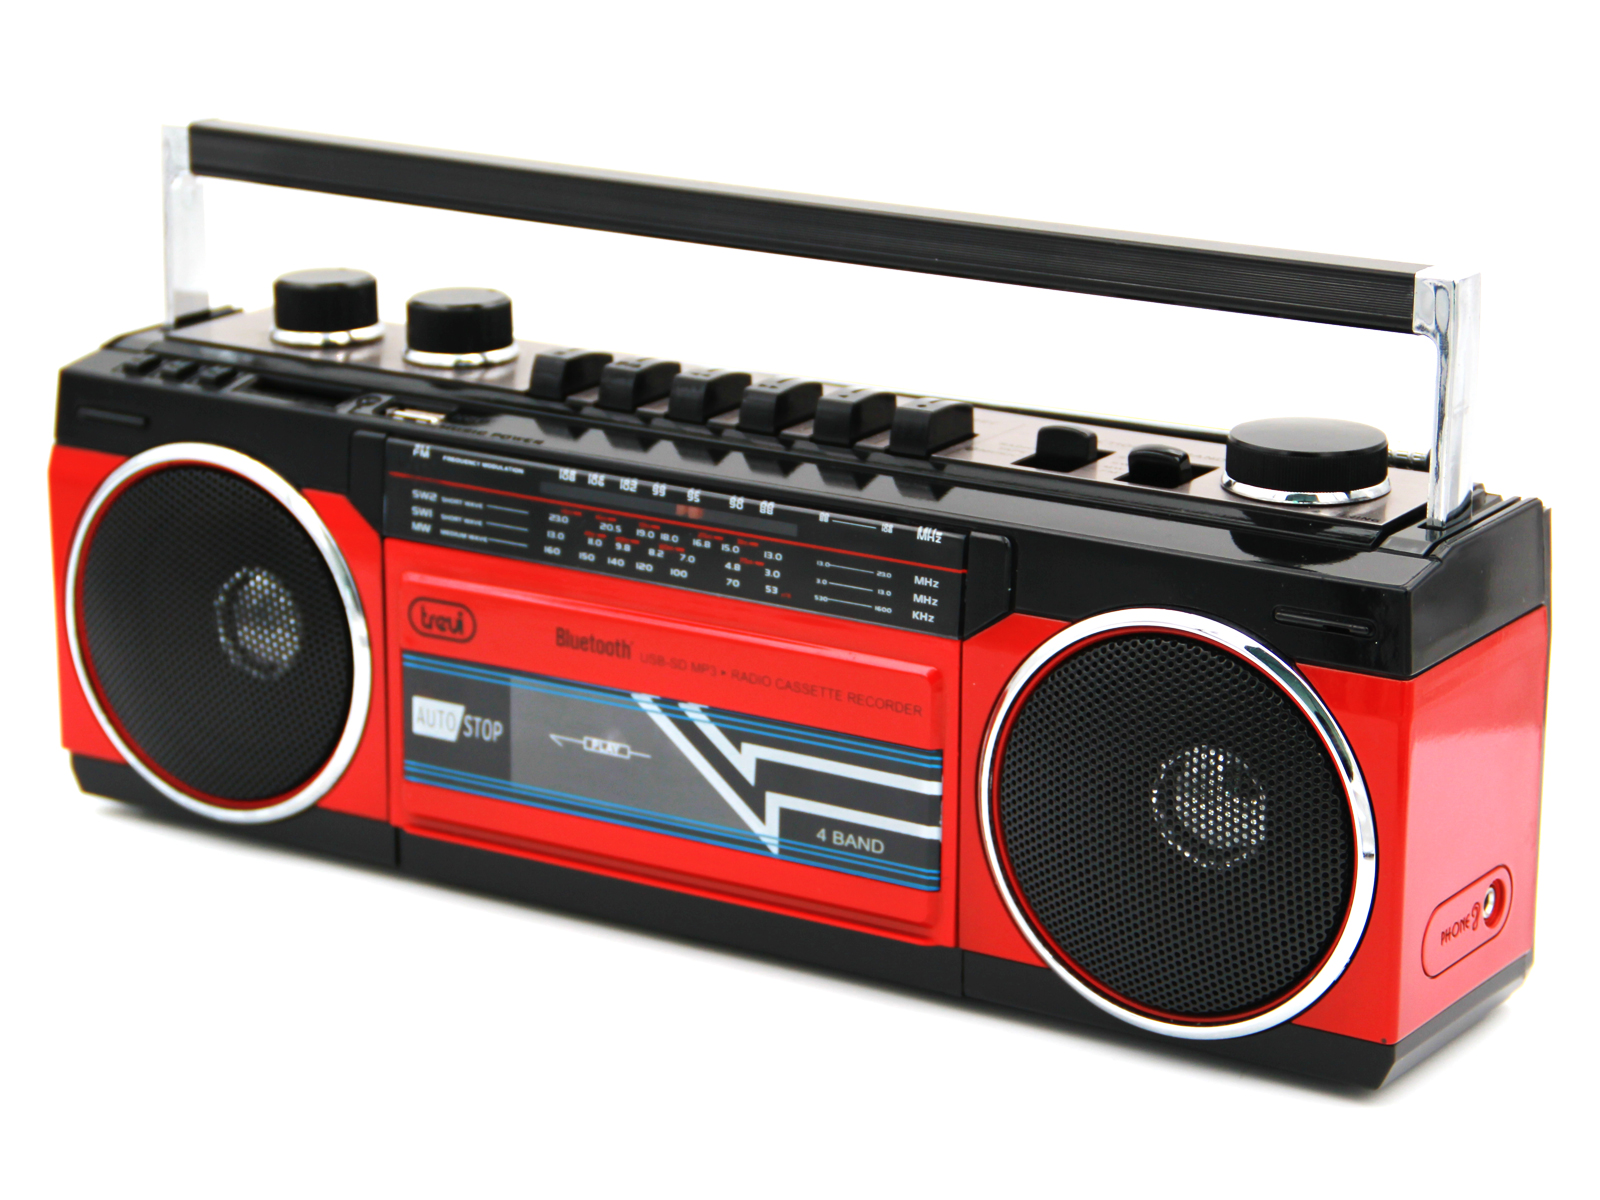 Trevi RR 501BT - Boombox - Radio cassette - noir